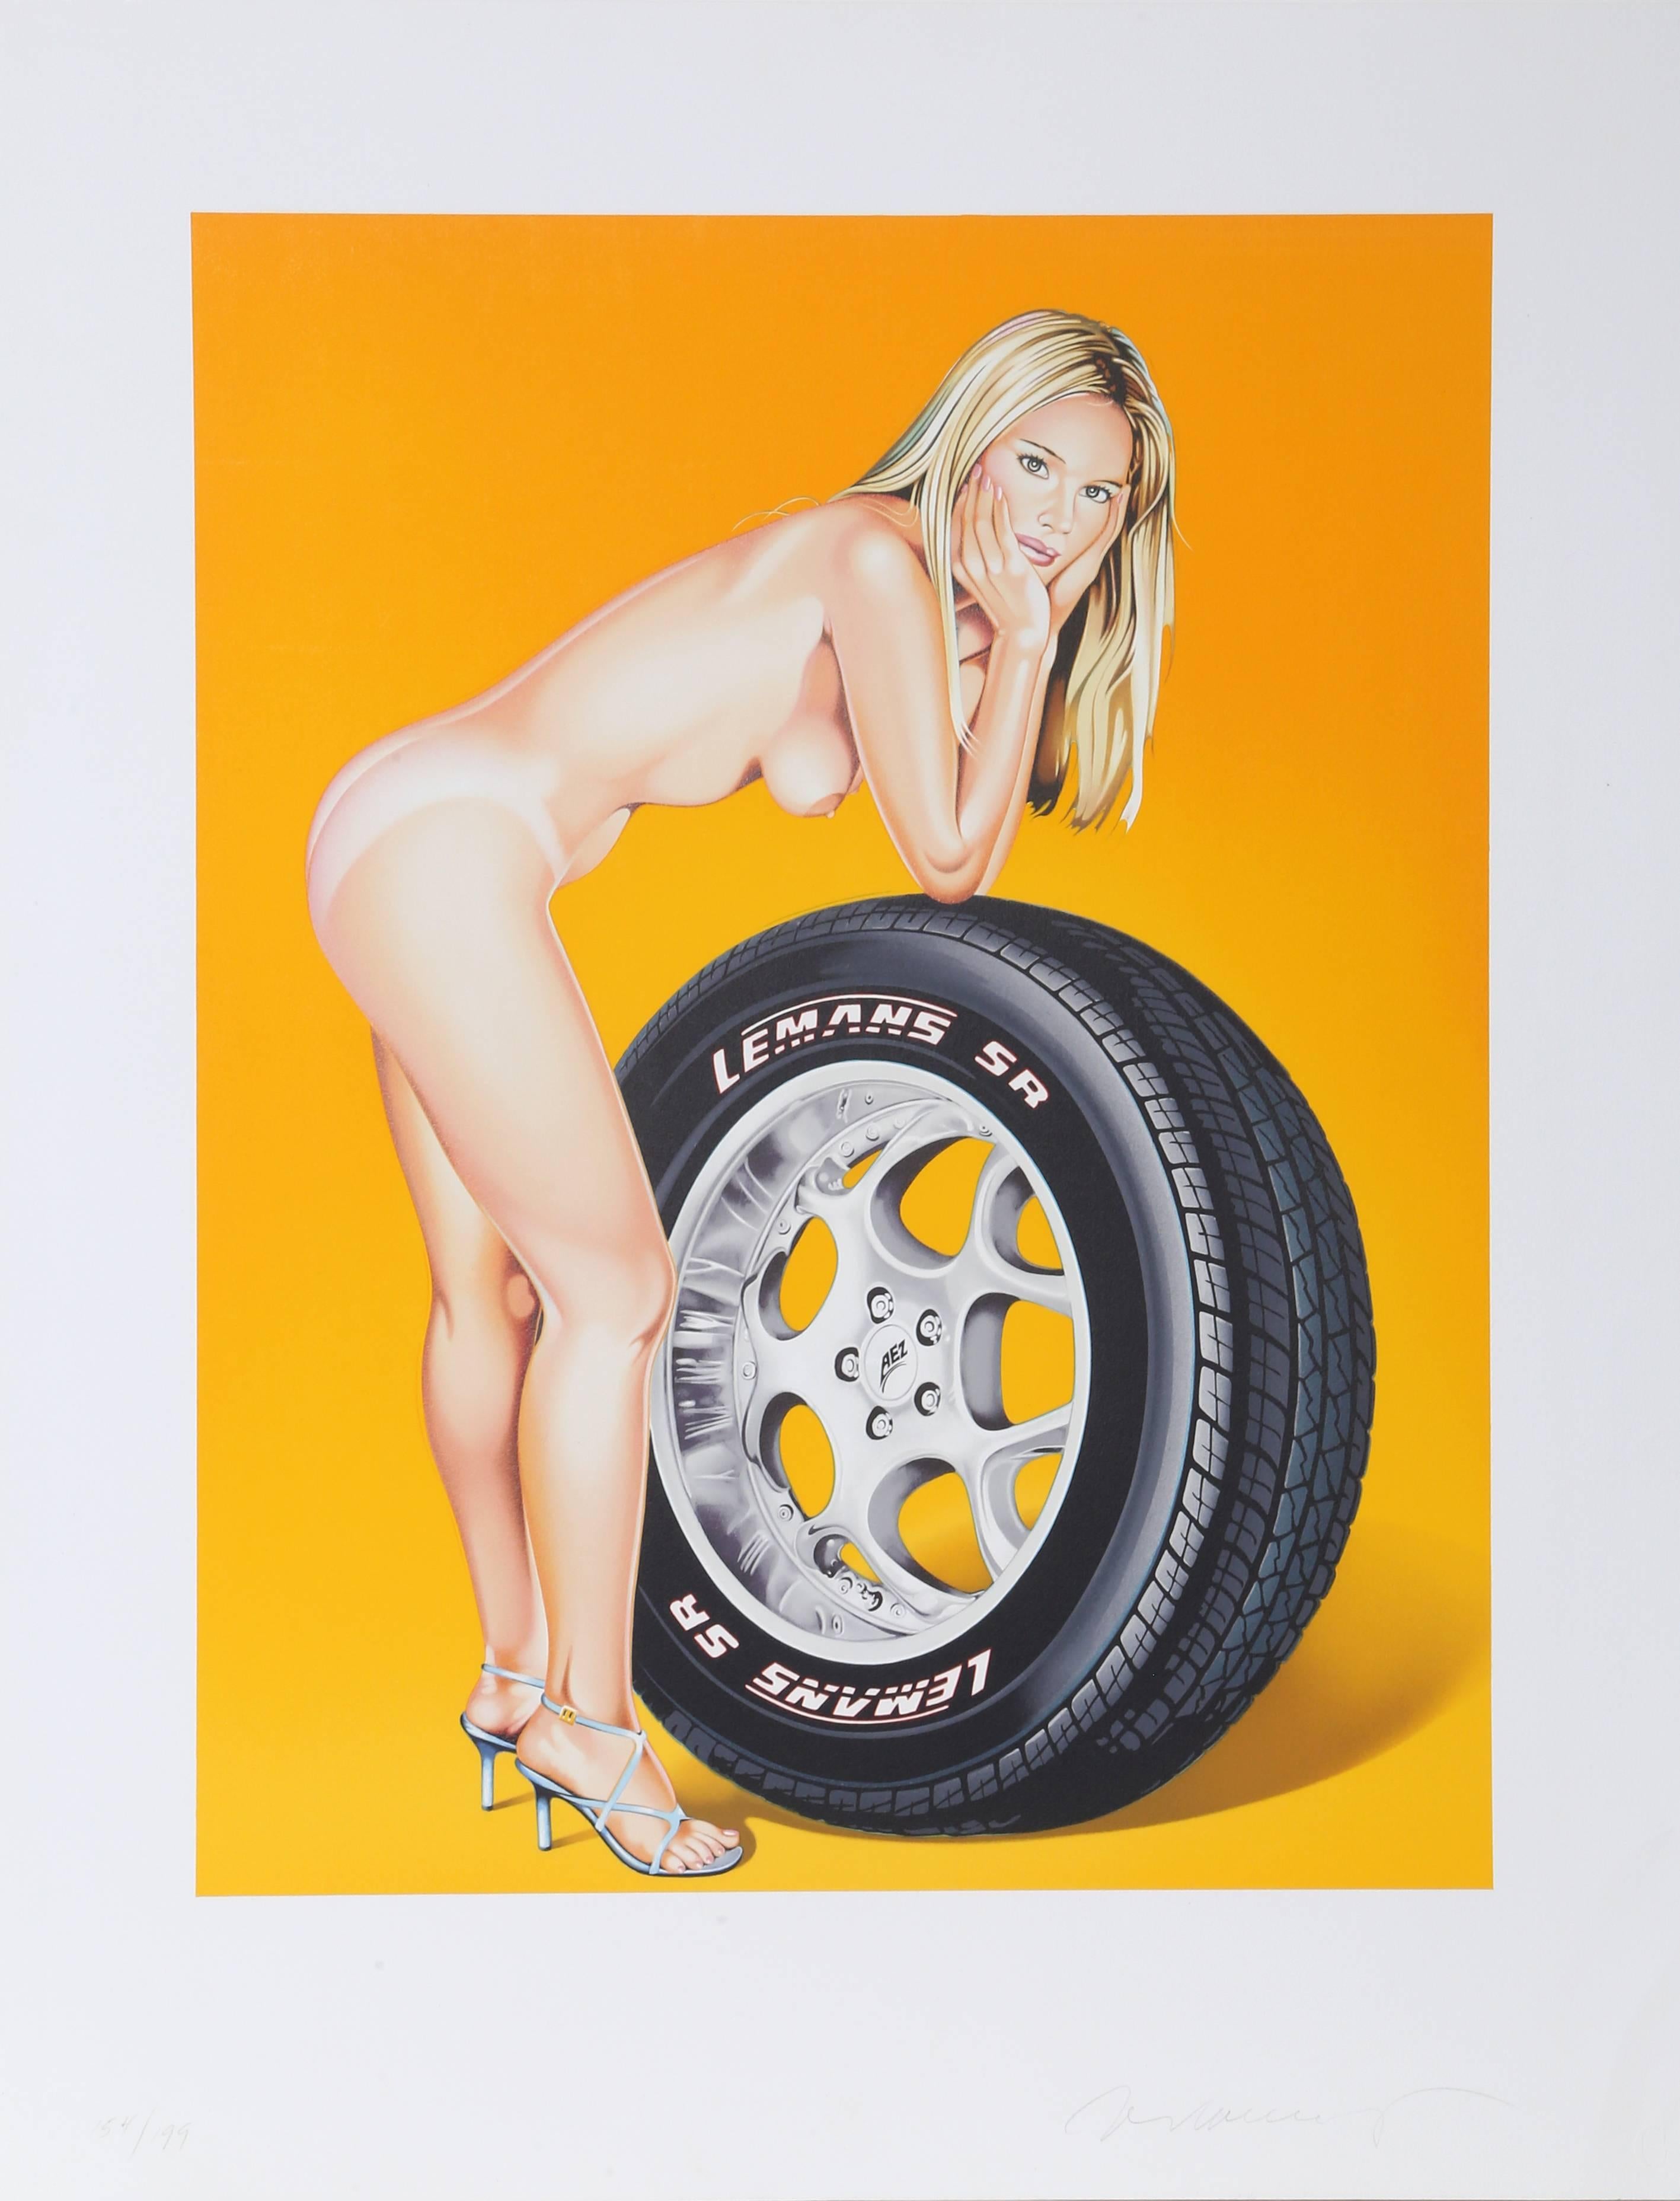 Künstler: Mel Ramos
Titel: Tyra Tyre
Jahr: 2004
Medium: Lithographie, mit Bleistift signiert und nummeriert
Auflage: 154/199
Bild: 22,5 x 17,5 Zoll
Papierformat: 29,5 x 23 Zoll